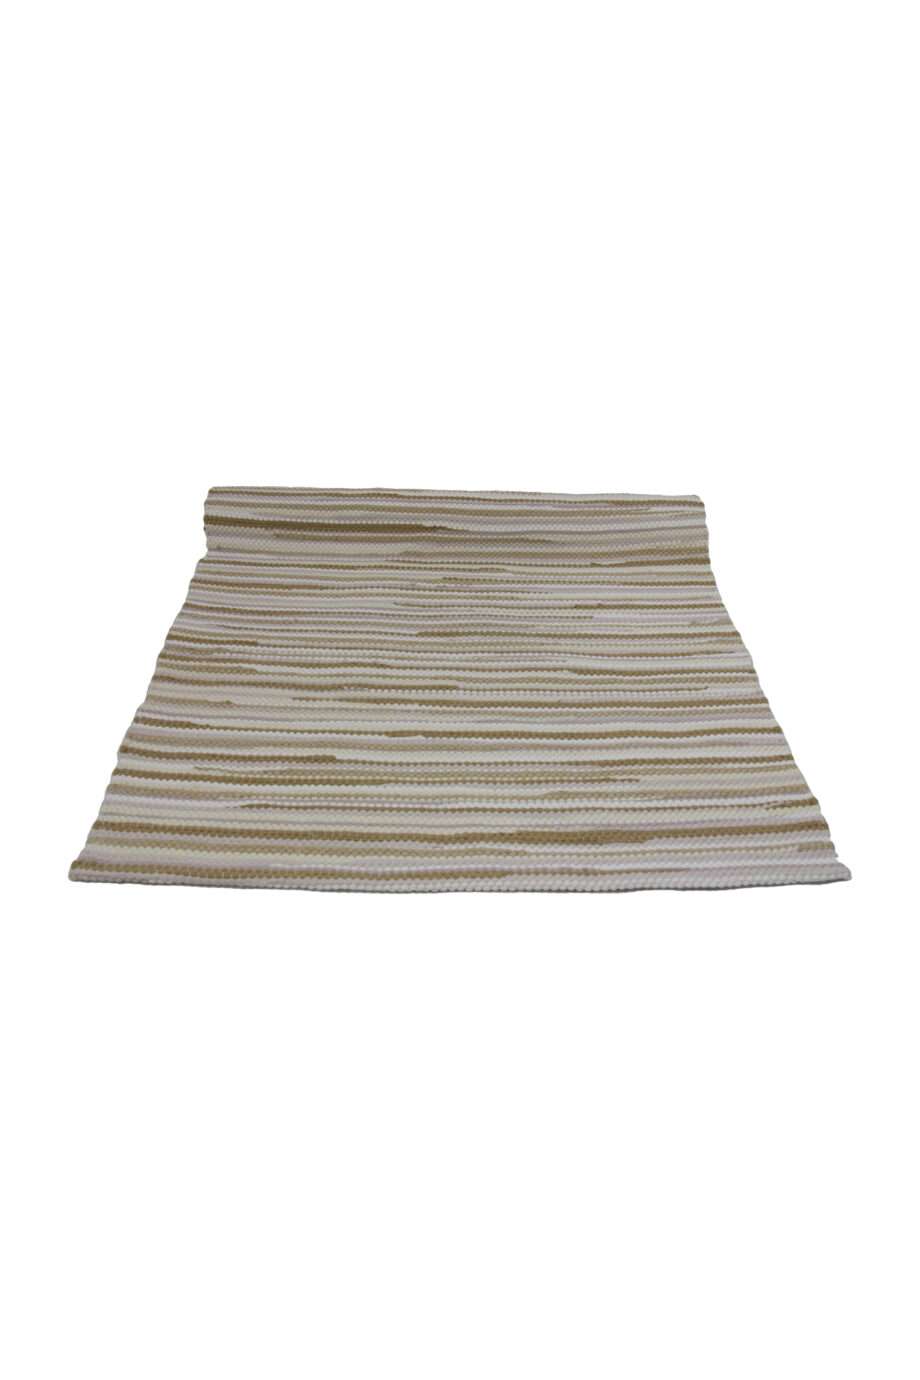 stripy linen woven cotton floor mat small